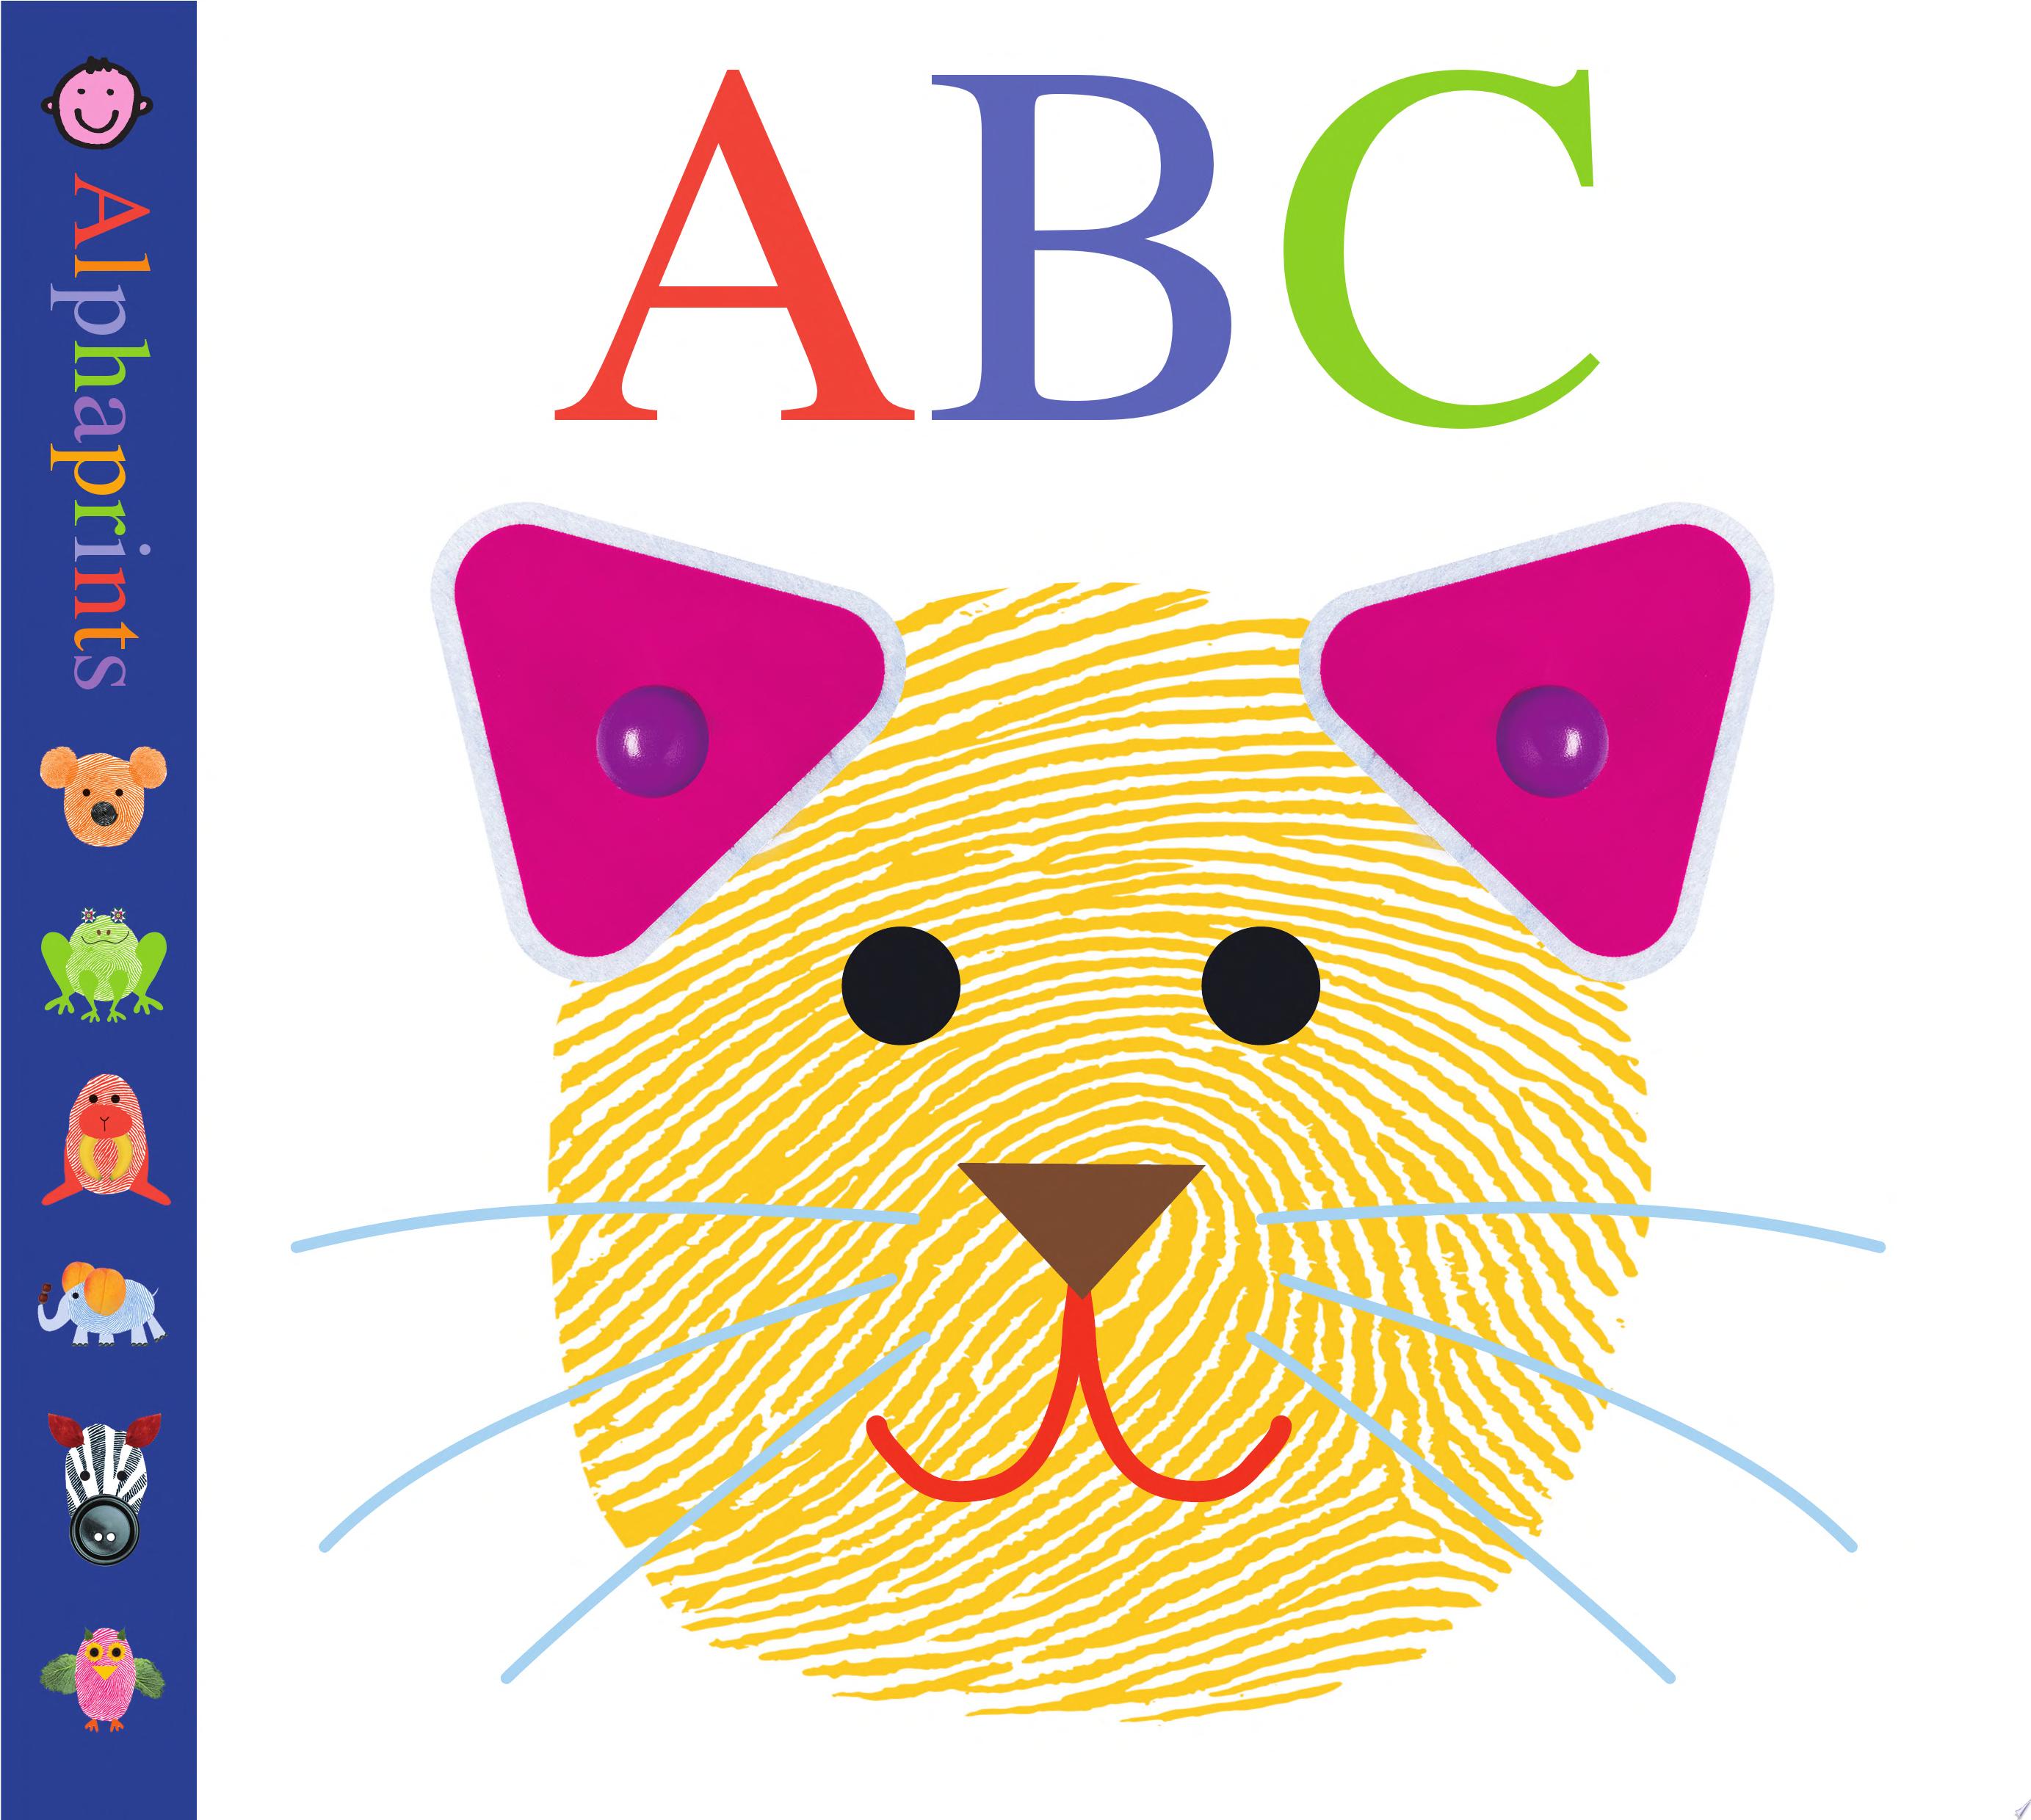 Image for "Alphaprints: ABC"